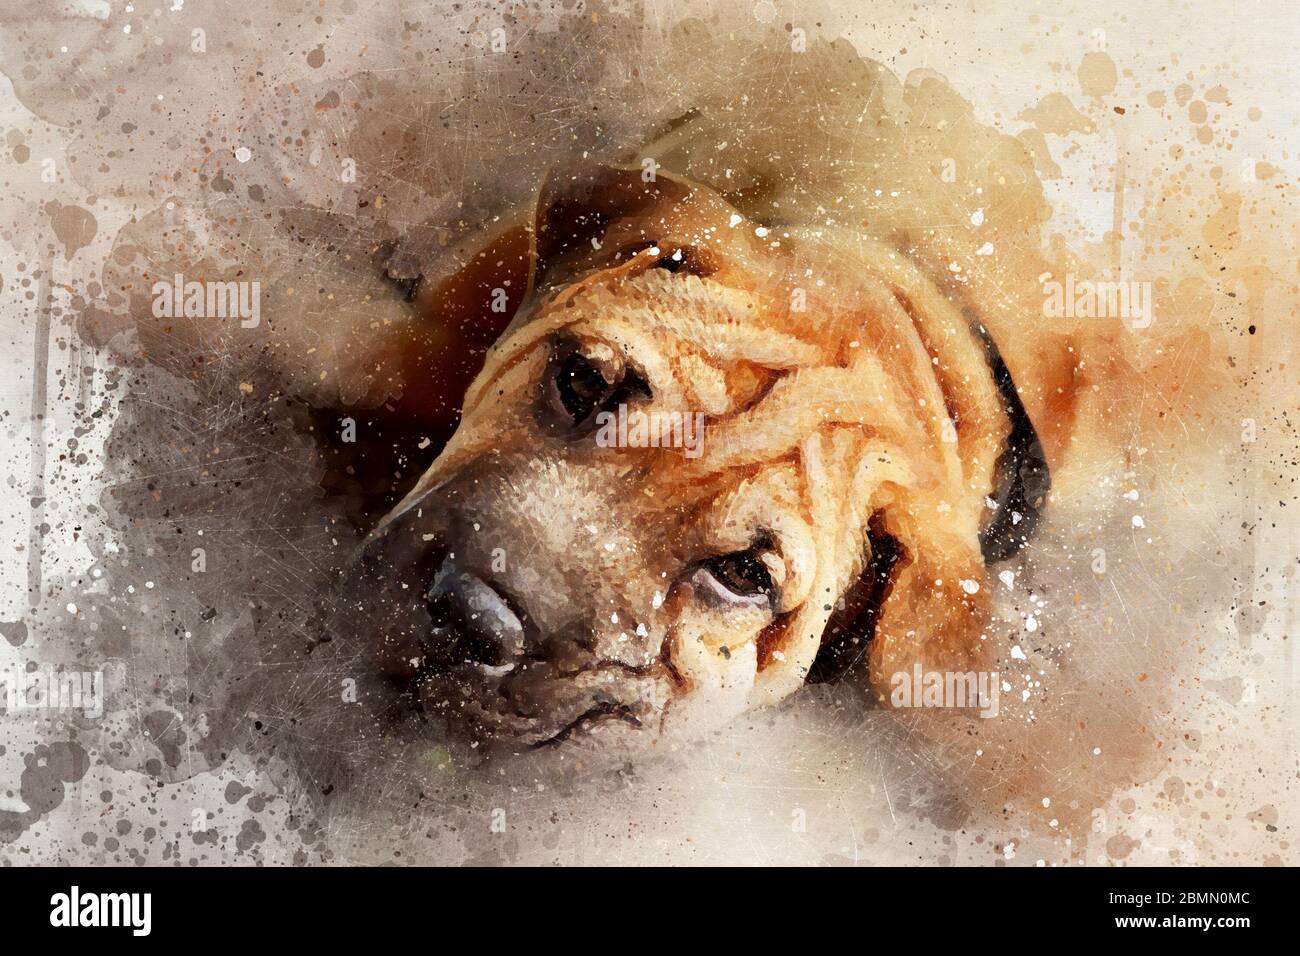 Mixed Media Portrait eines ruhenden Shar pei Hundes. Digitales Aquarell-Portrait mit Farbspritzern, Kratzern und Blots. Stockfoto